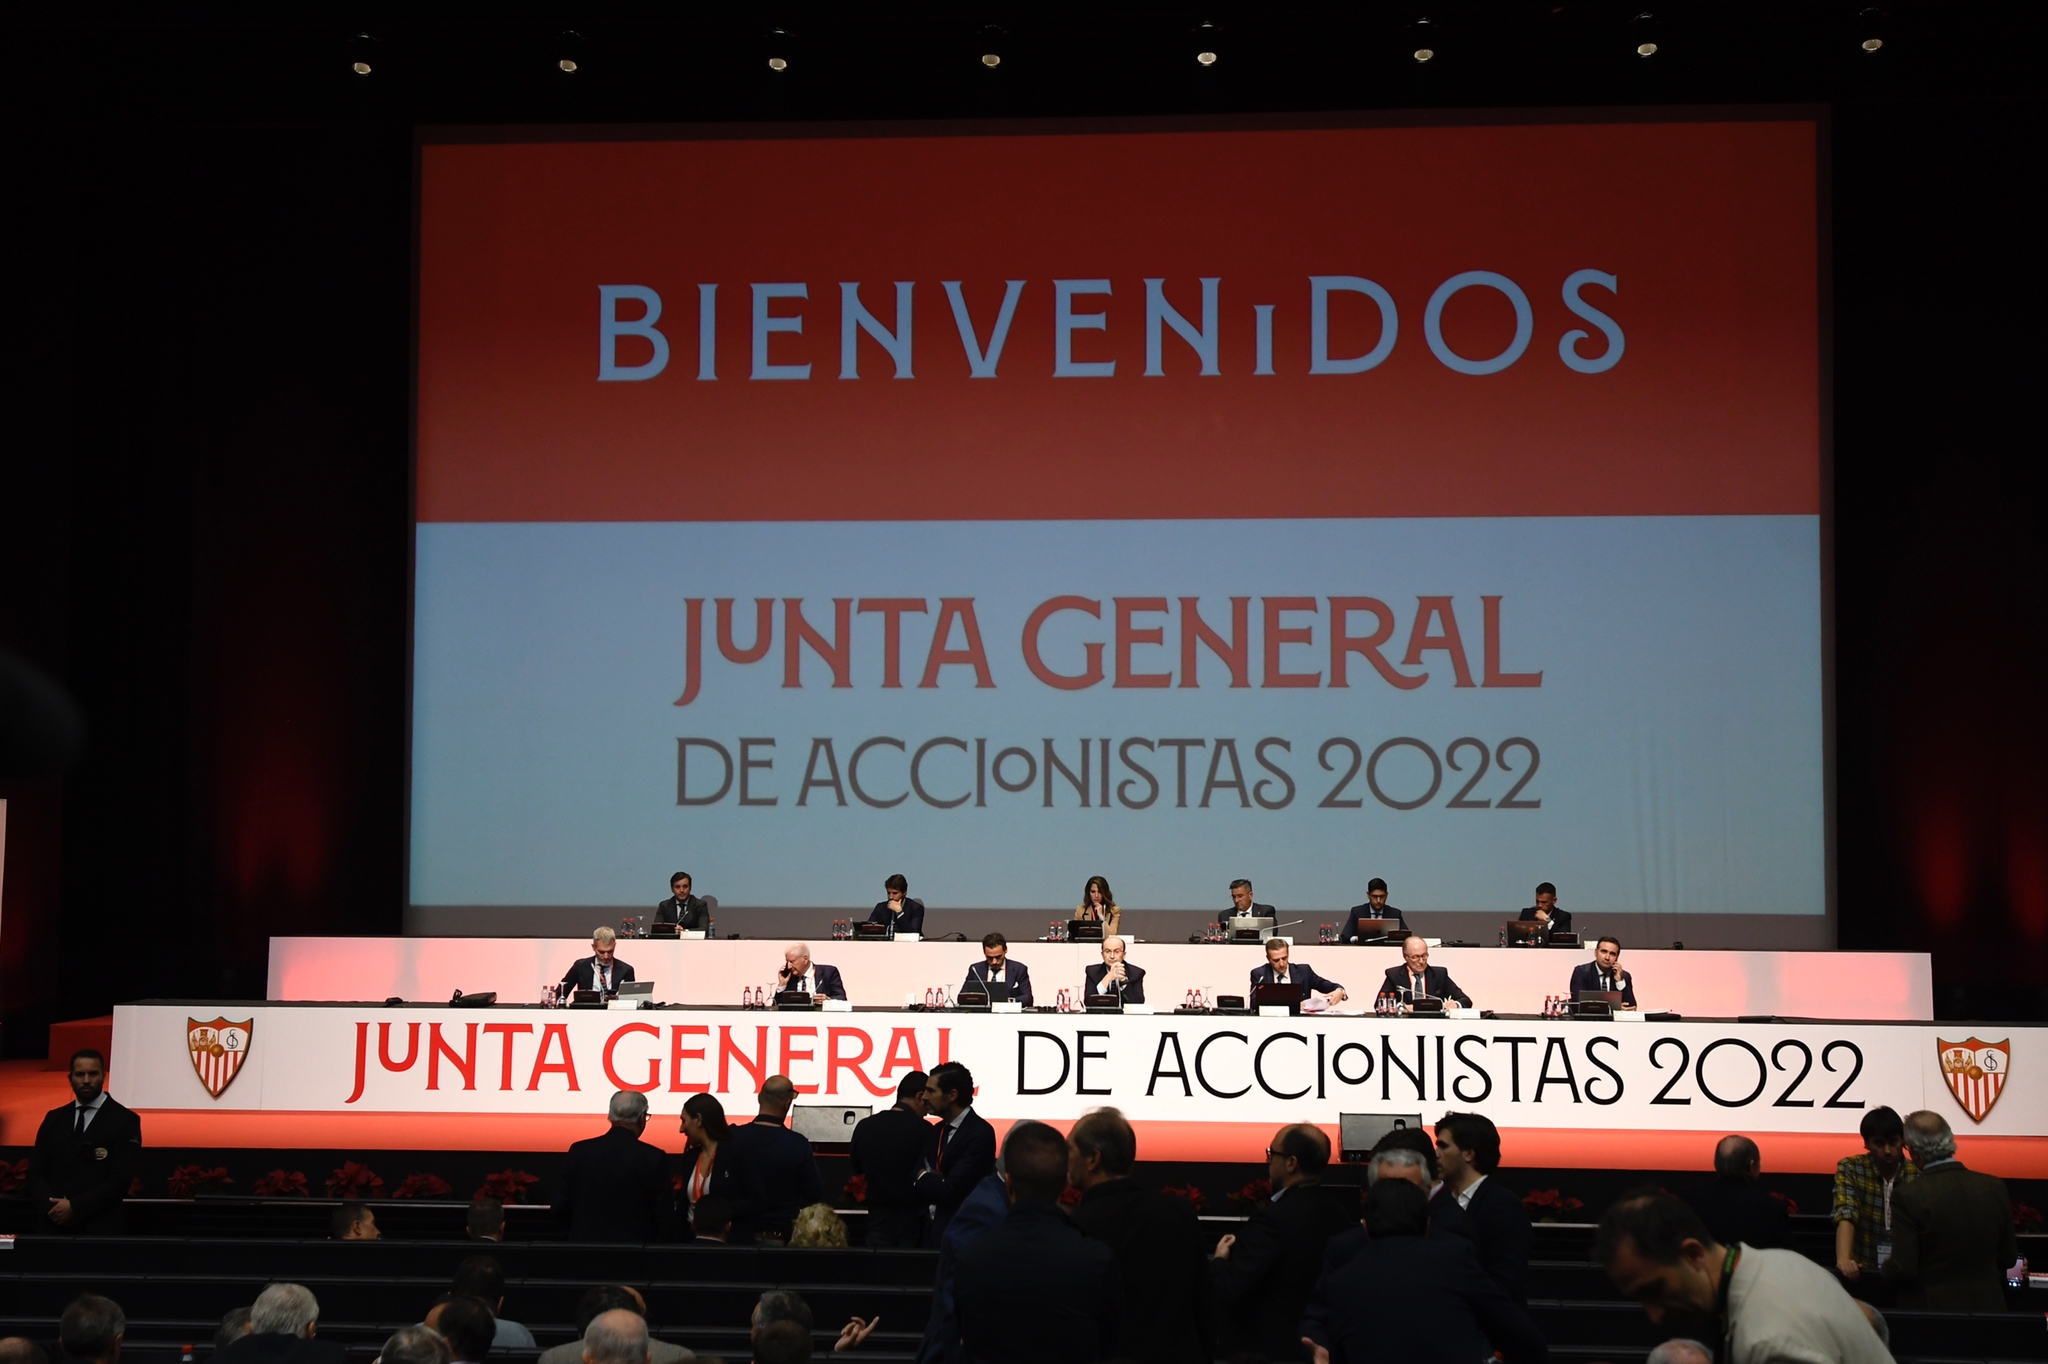 Junta General de Accionistas 2022